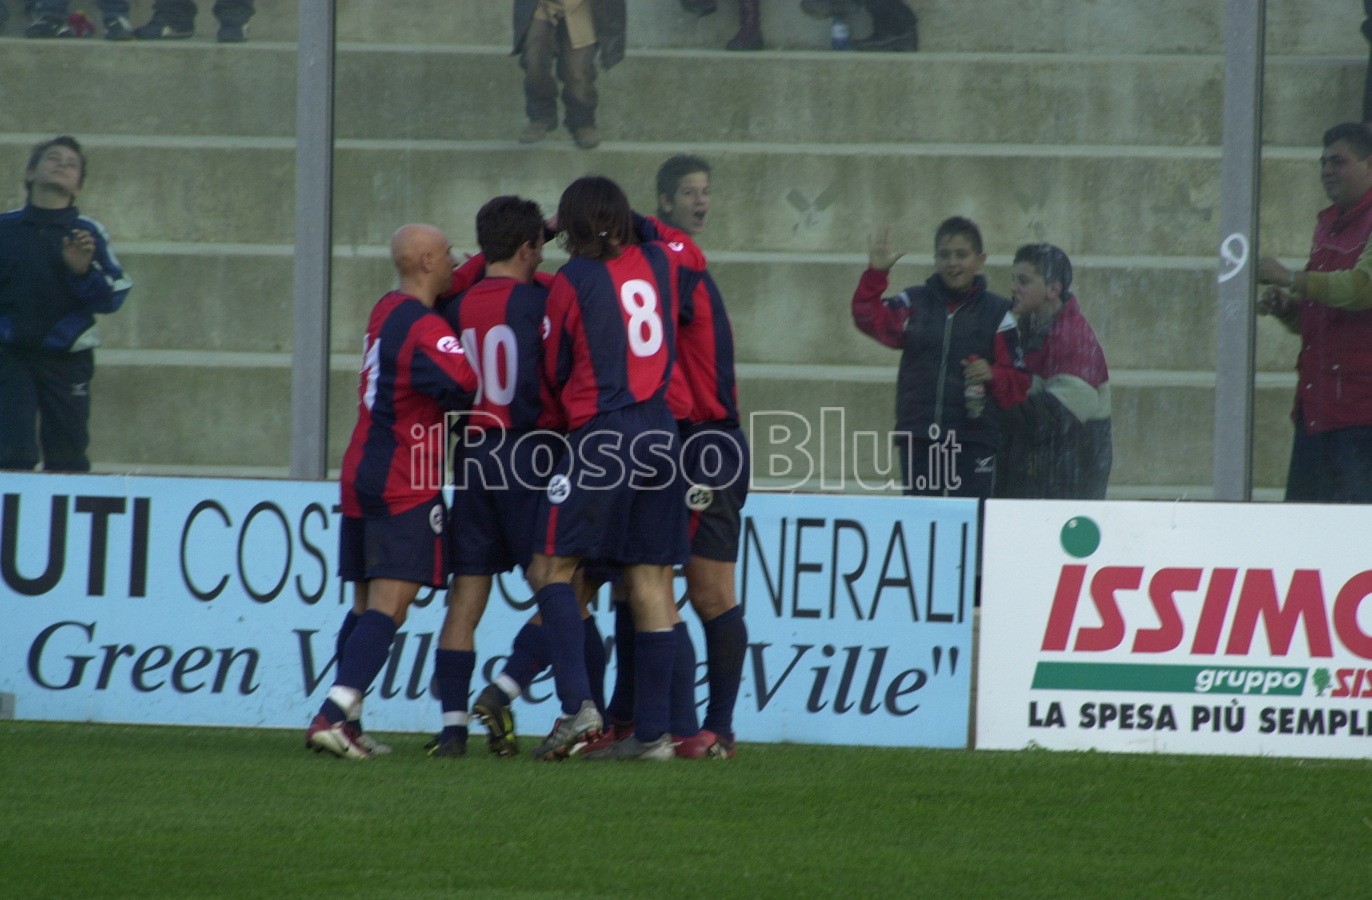 Serie C1 – 2003-2004 – Crotone vs Benevento 1-1 (Archivio Redazione)21